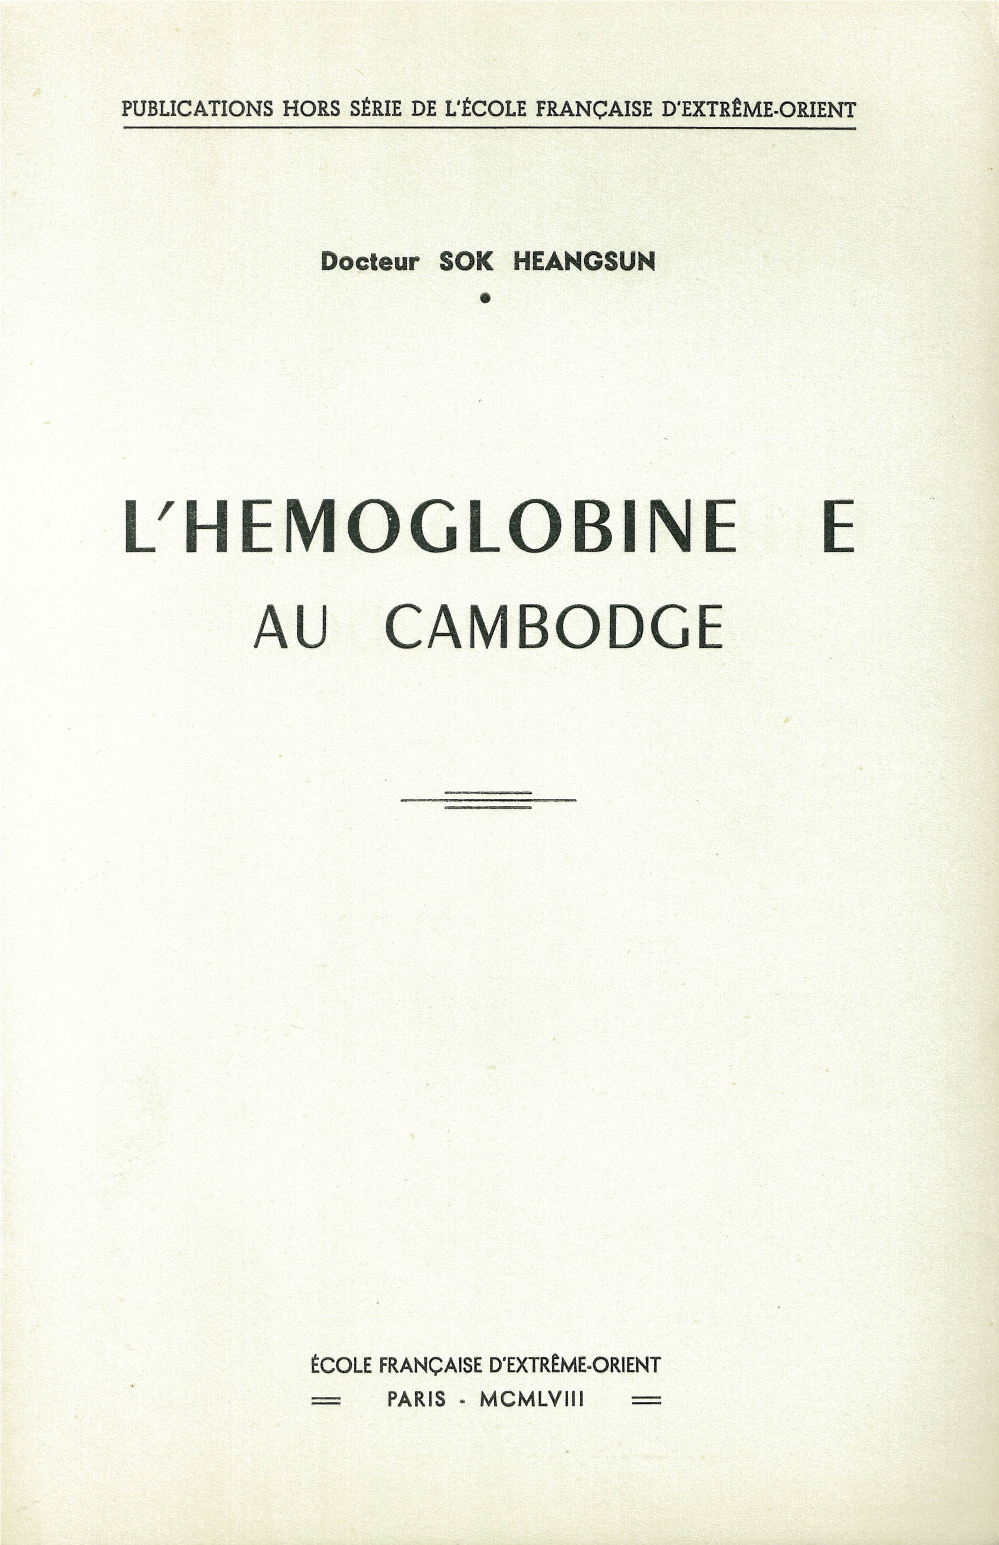 L'hémoglobine E au Cambodge